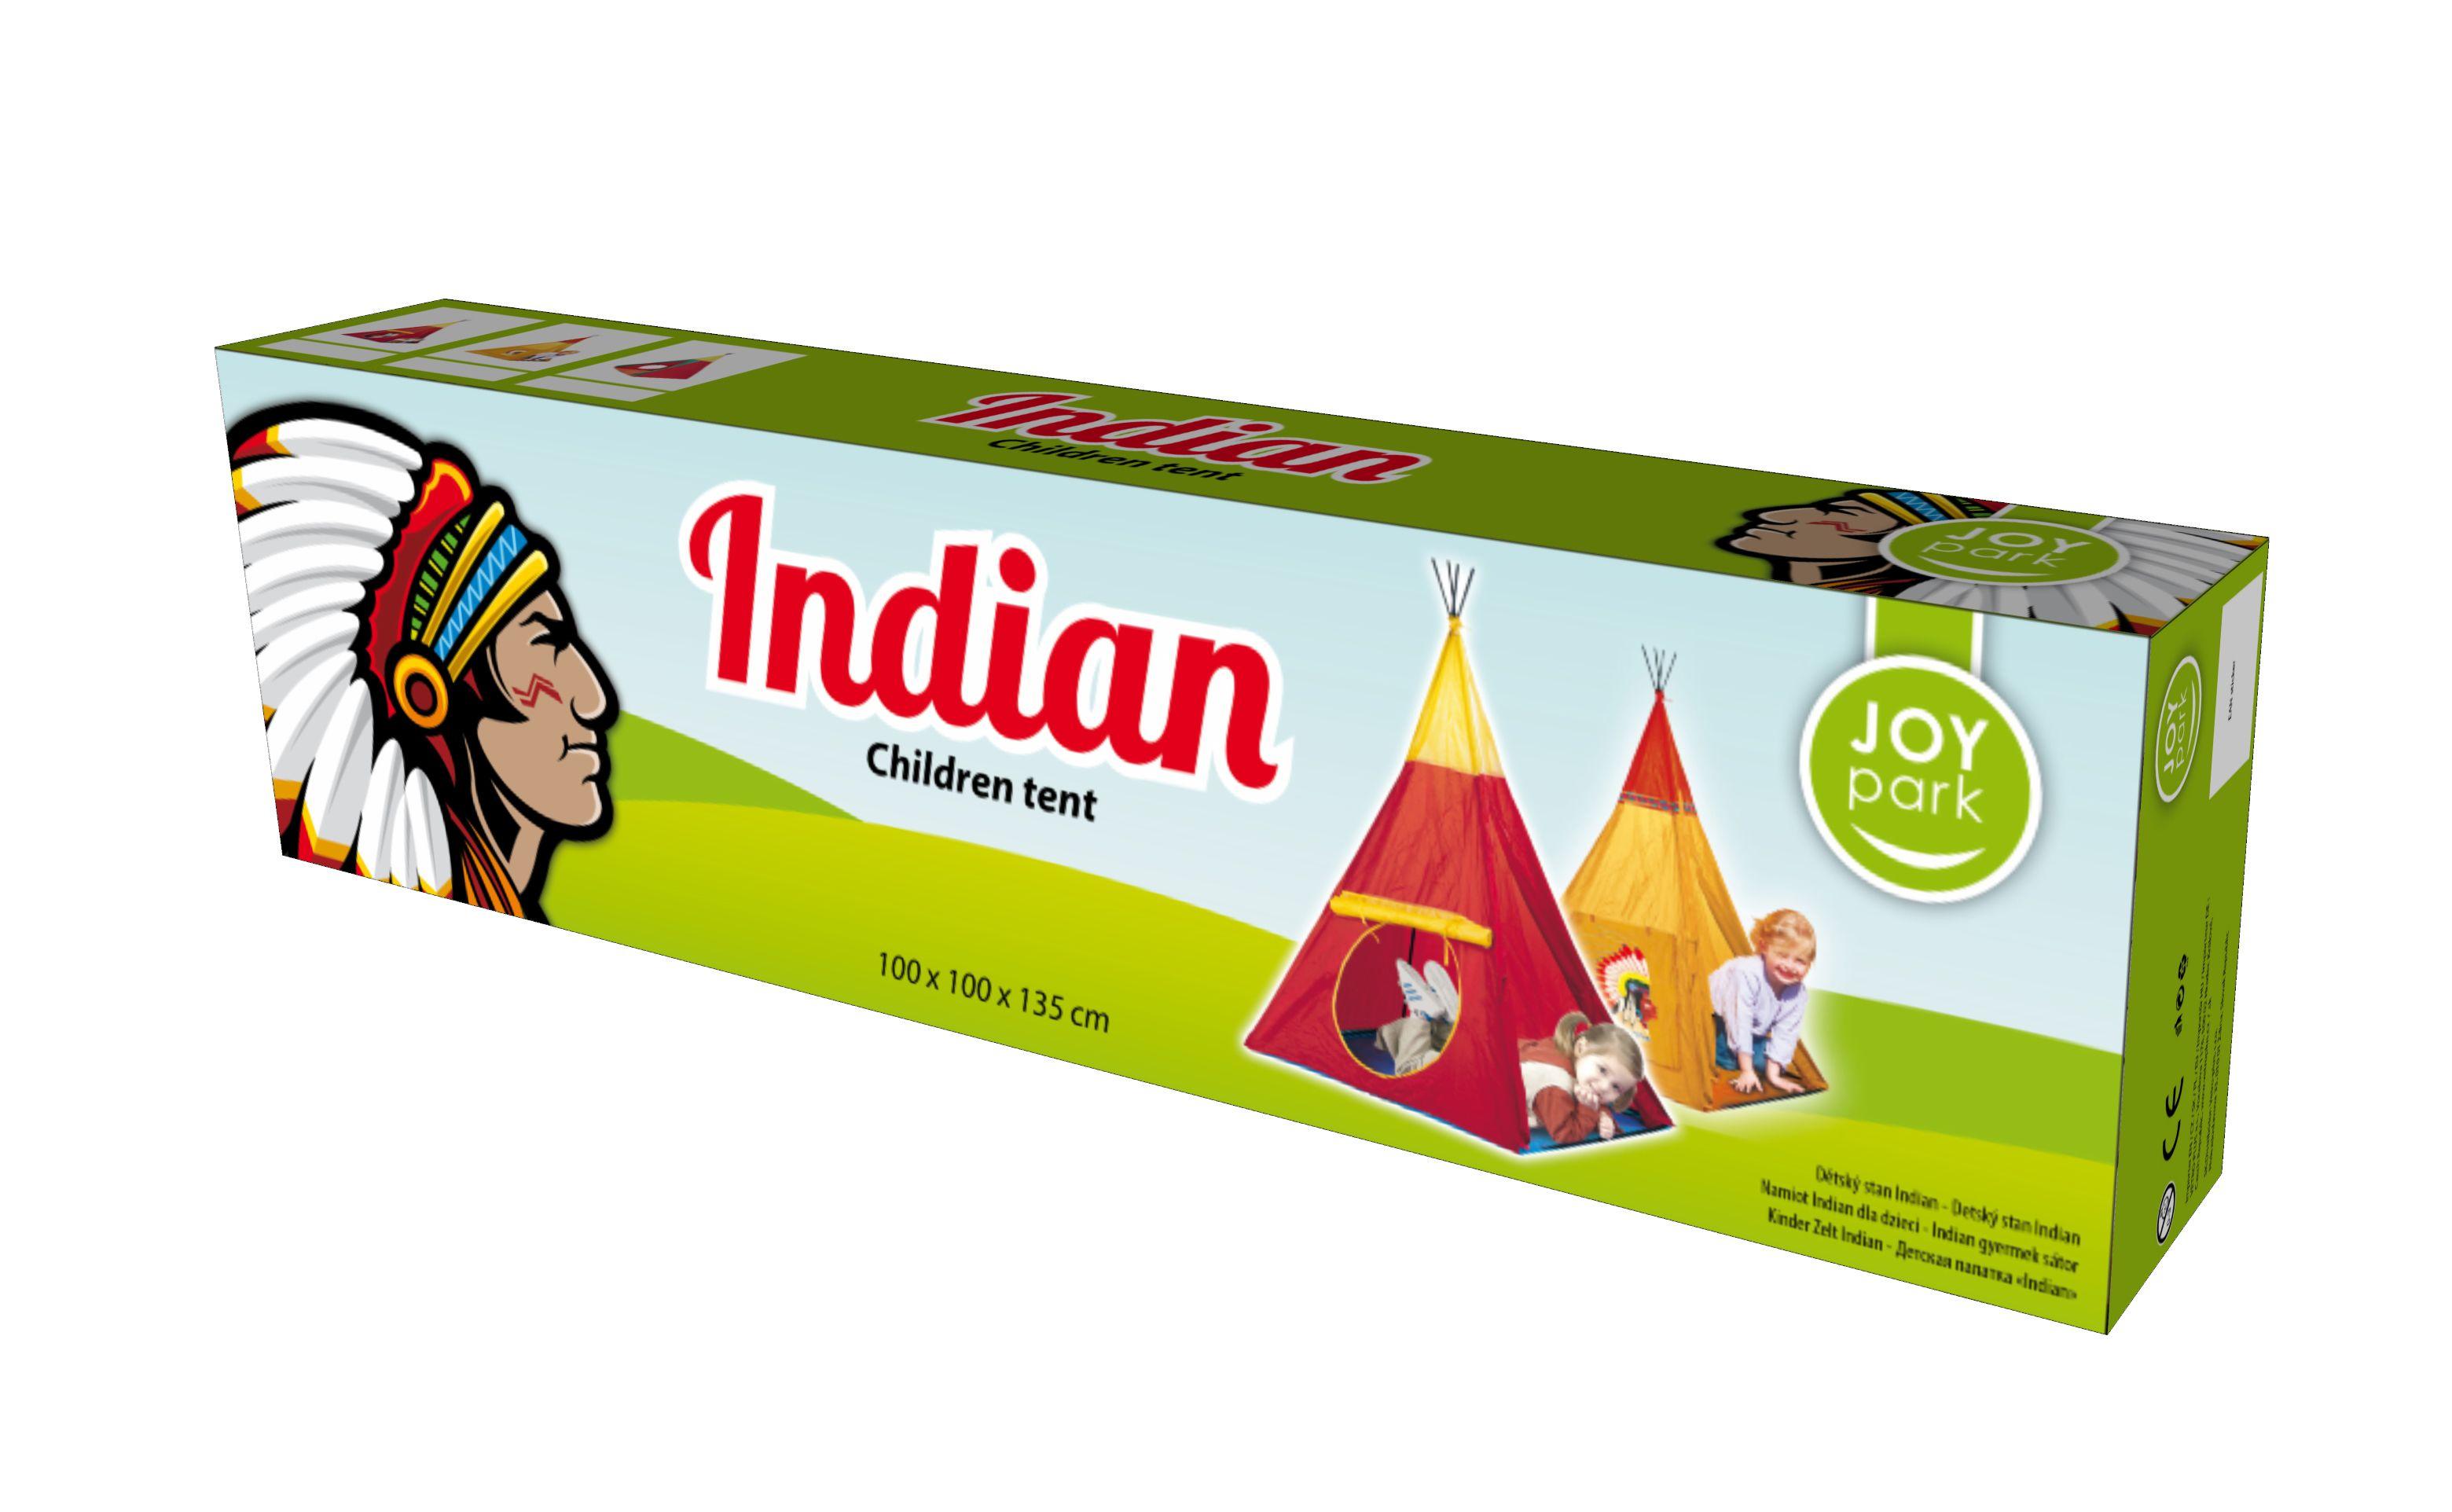 Dziecięcy namiot INDIAN II 100x100x135cm